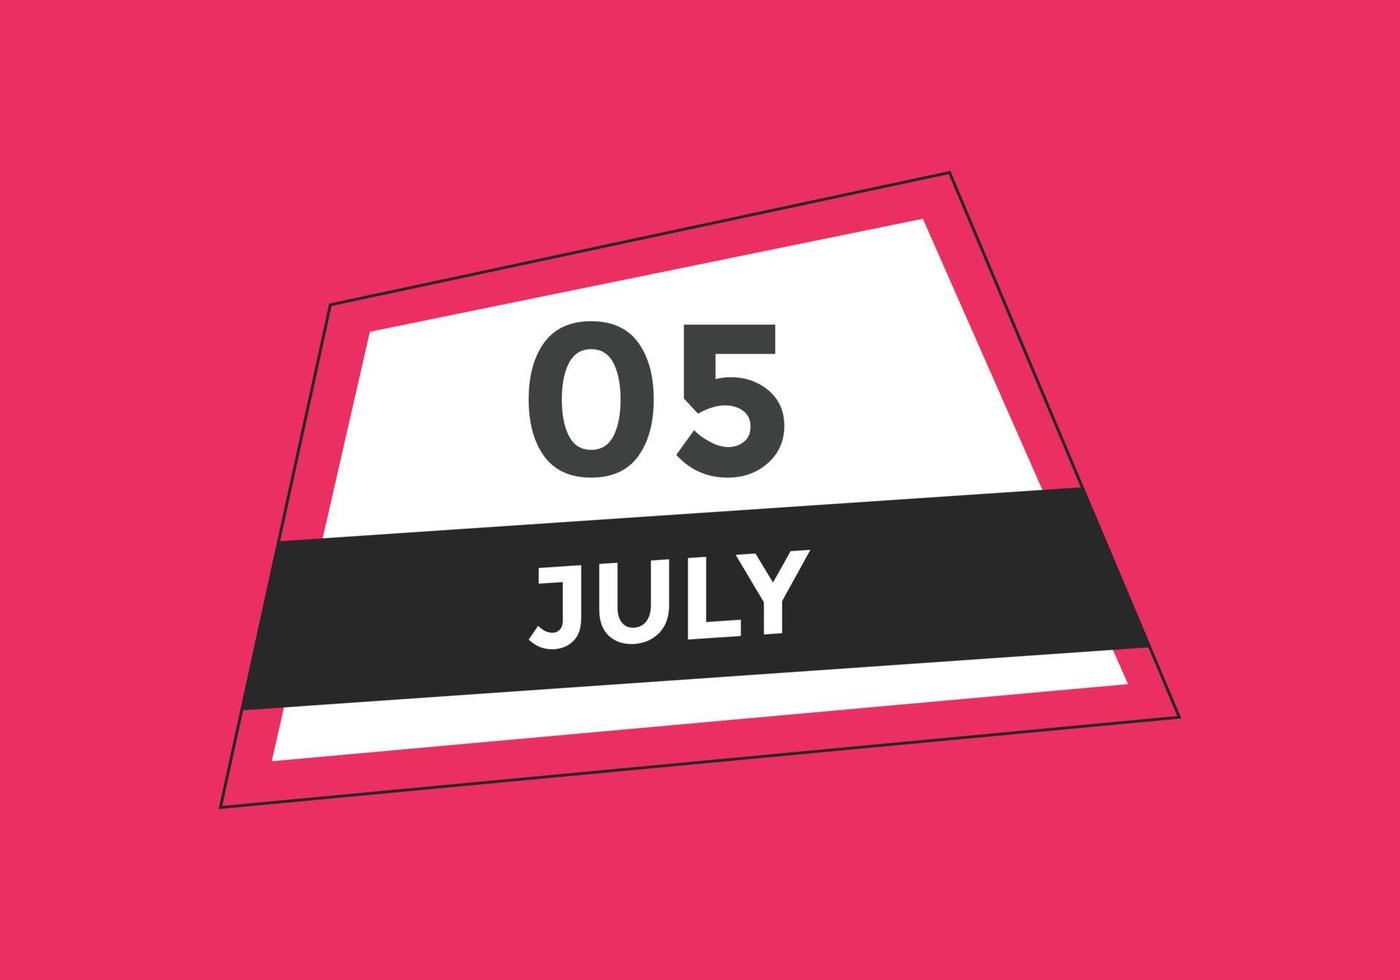 rappel du calendrier du 5 juillet. Modèle d'icône de calendrier quotidien du 5 juillet. modèle de conception d'icône calendrier 5 juillet. illustration vectorielle vecteur